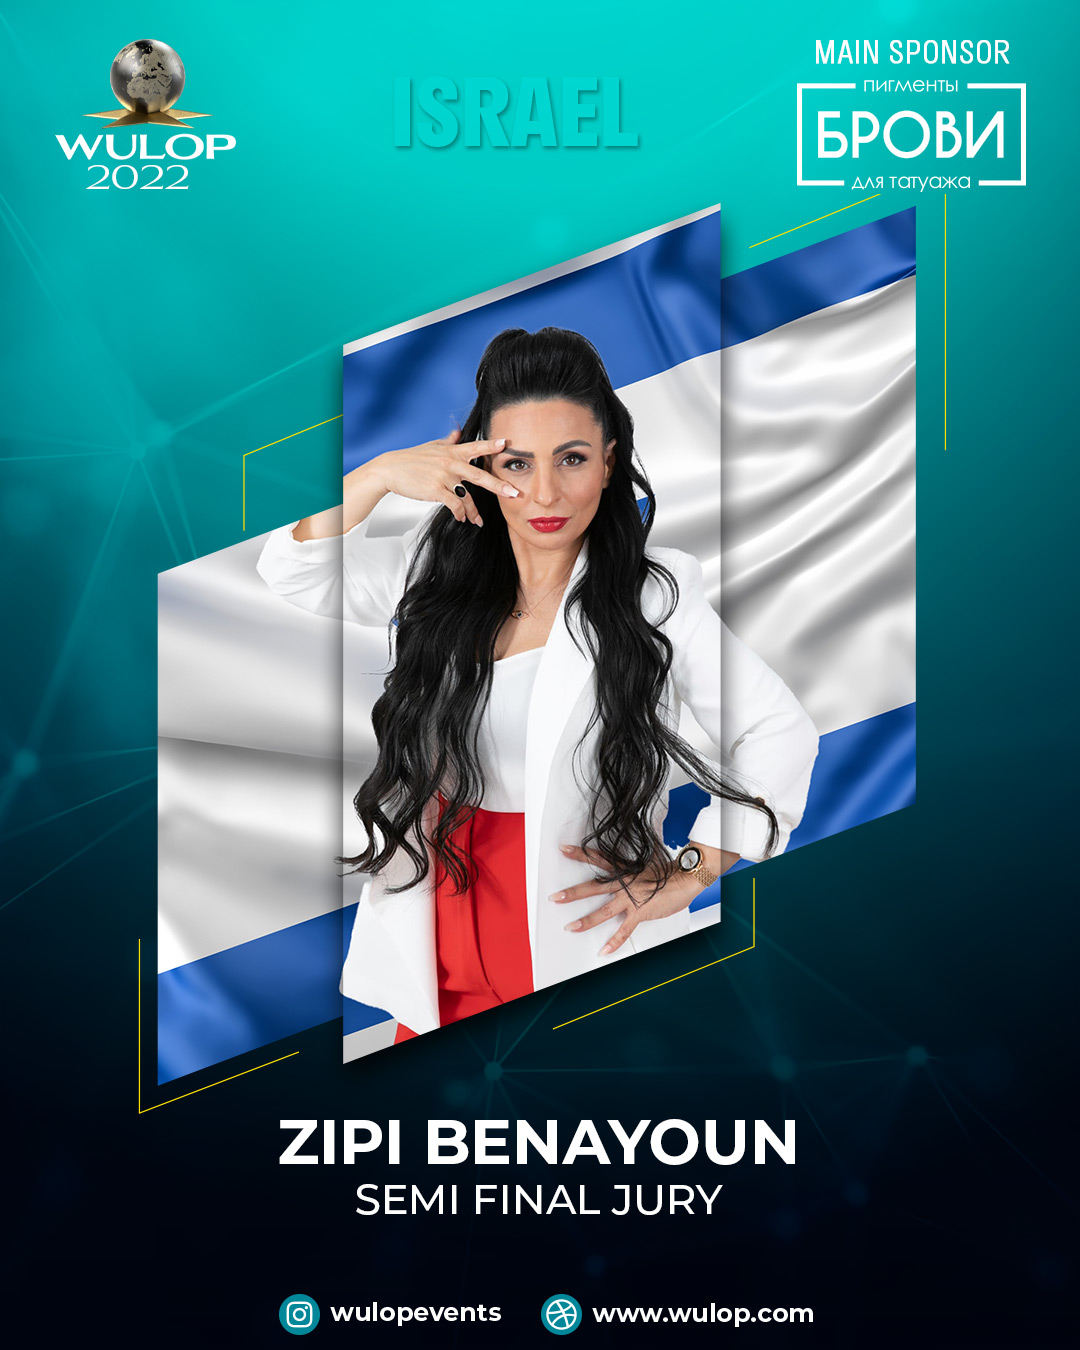 Zipi Benayoun